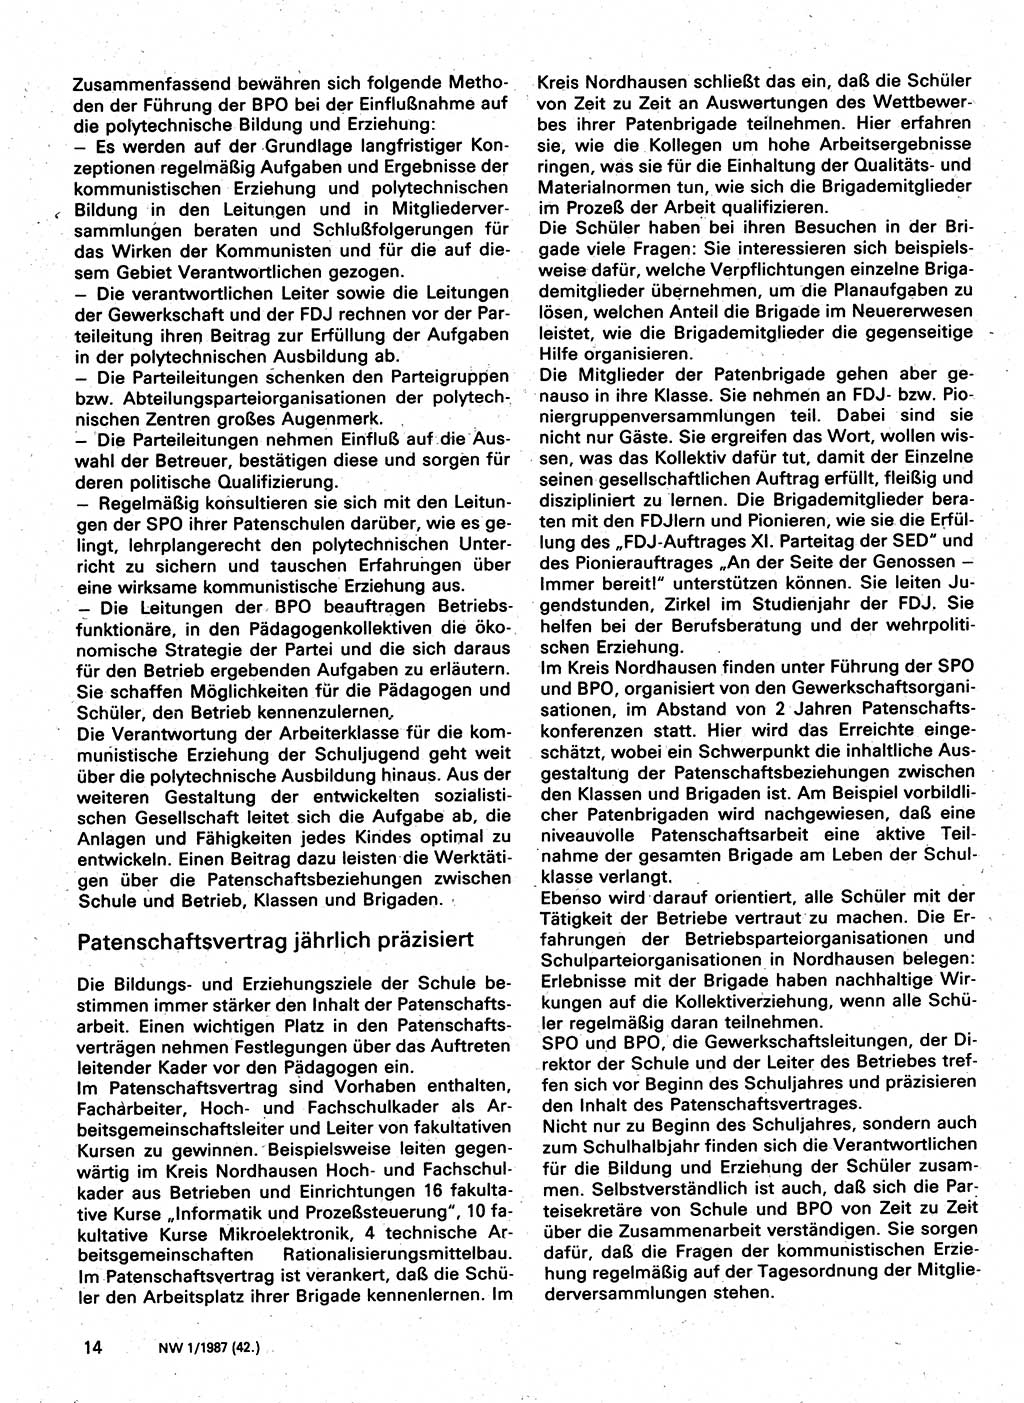 Neuer Weg (NW), Organ des Zentralkomitees (ZK) der SED (Sozialistische Einheitspartei Deutschlands) für Fragen des Parteilebens, 42. Jahrgang [Deutsche Demokratische Republik (DDR)] 1987, Seite 14 (NW ZK SED DDR 1987, S. 14)